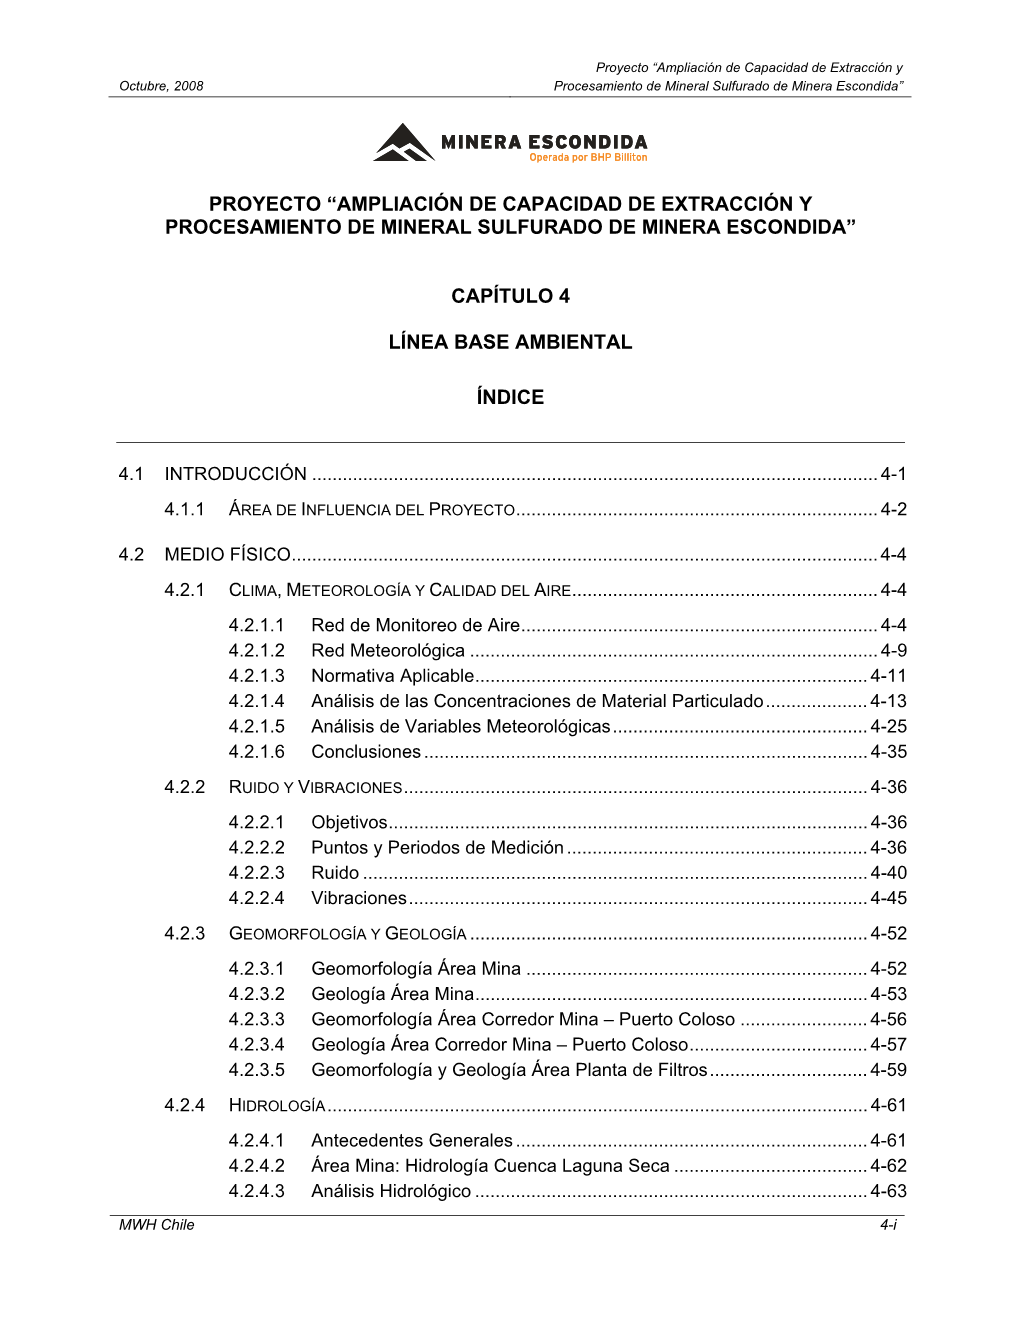 Proyecto “Ampliación De Capacidad De Extracción Y Procesamiento De Mineral Sulfurado De Minera Escondida” Capítulo 4